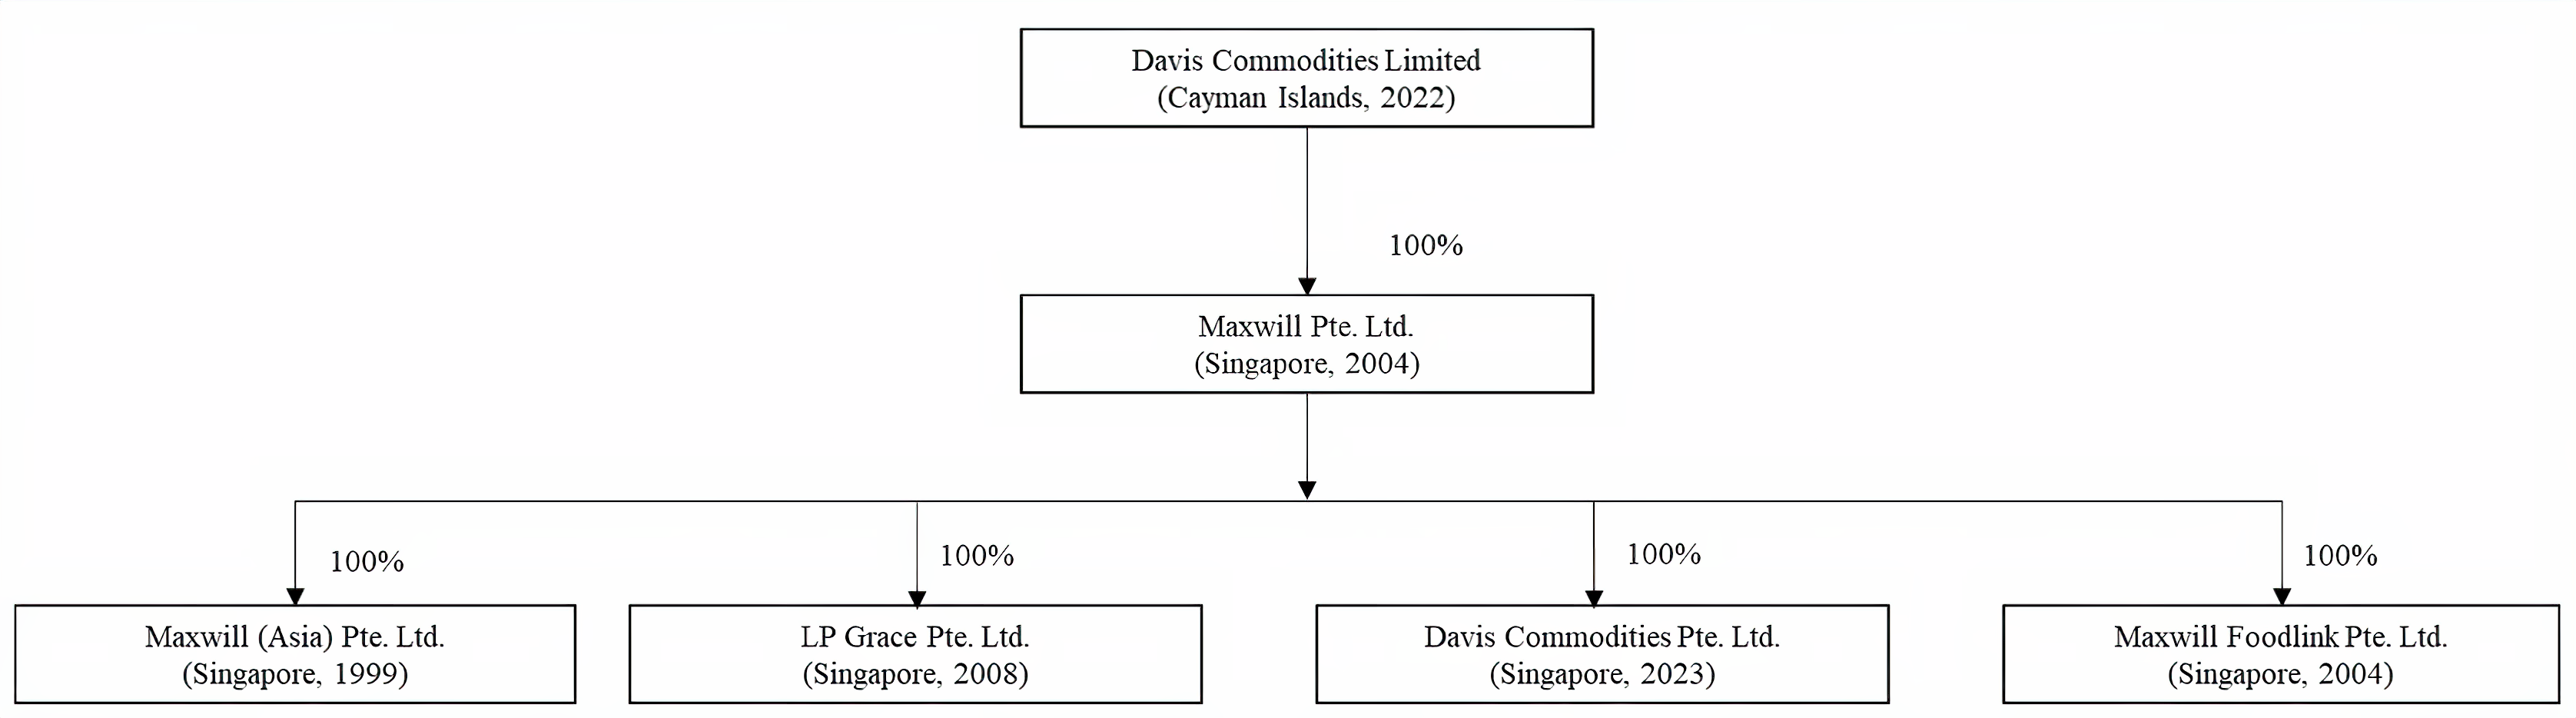  Figure 1. The Corporate Structure of Davis Commodities Pte. Ltd.